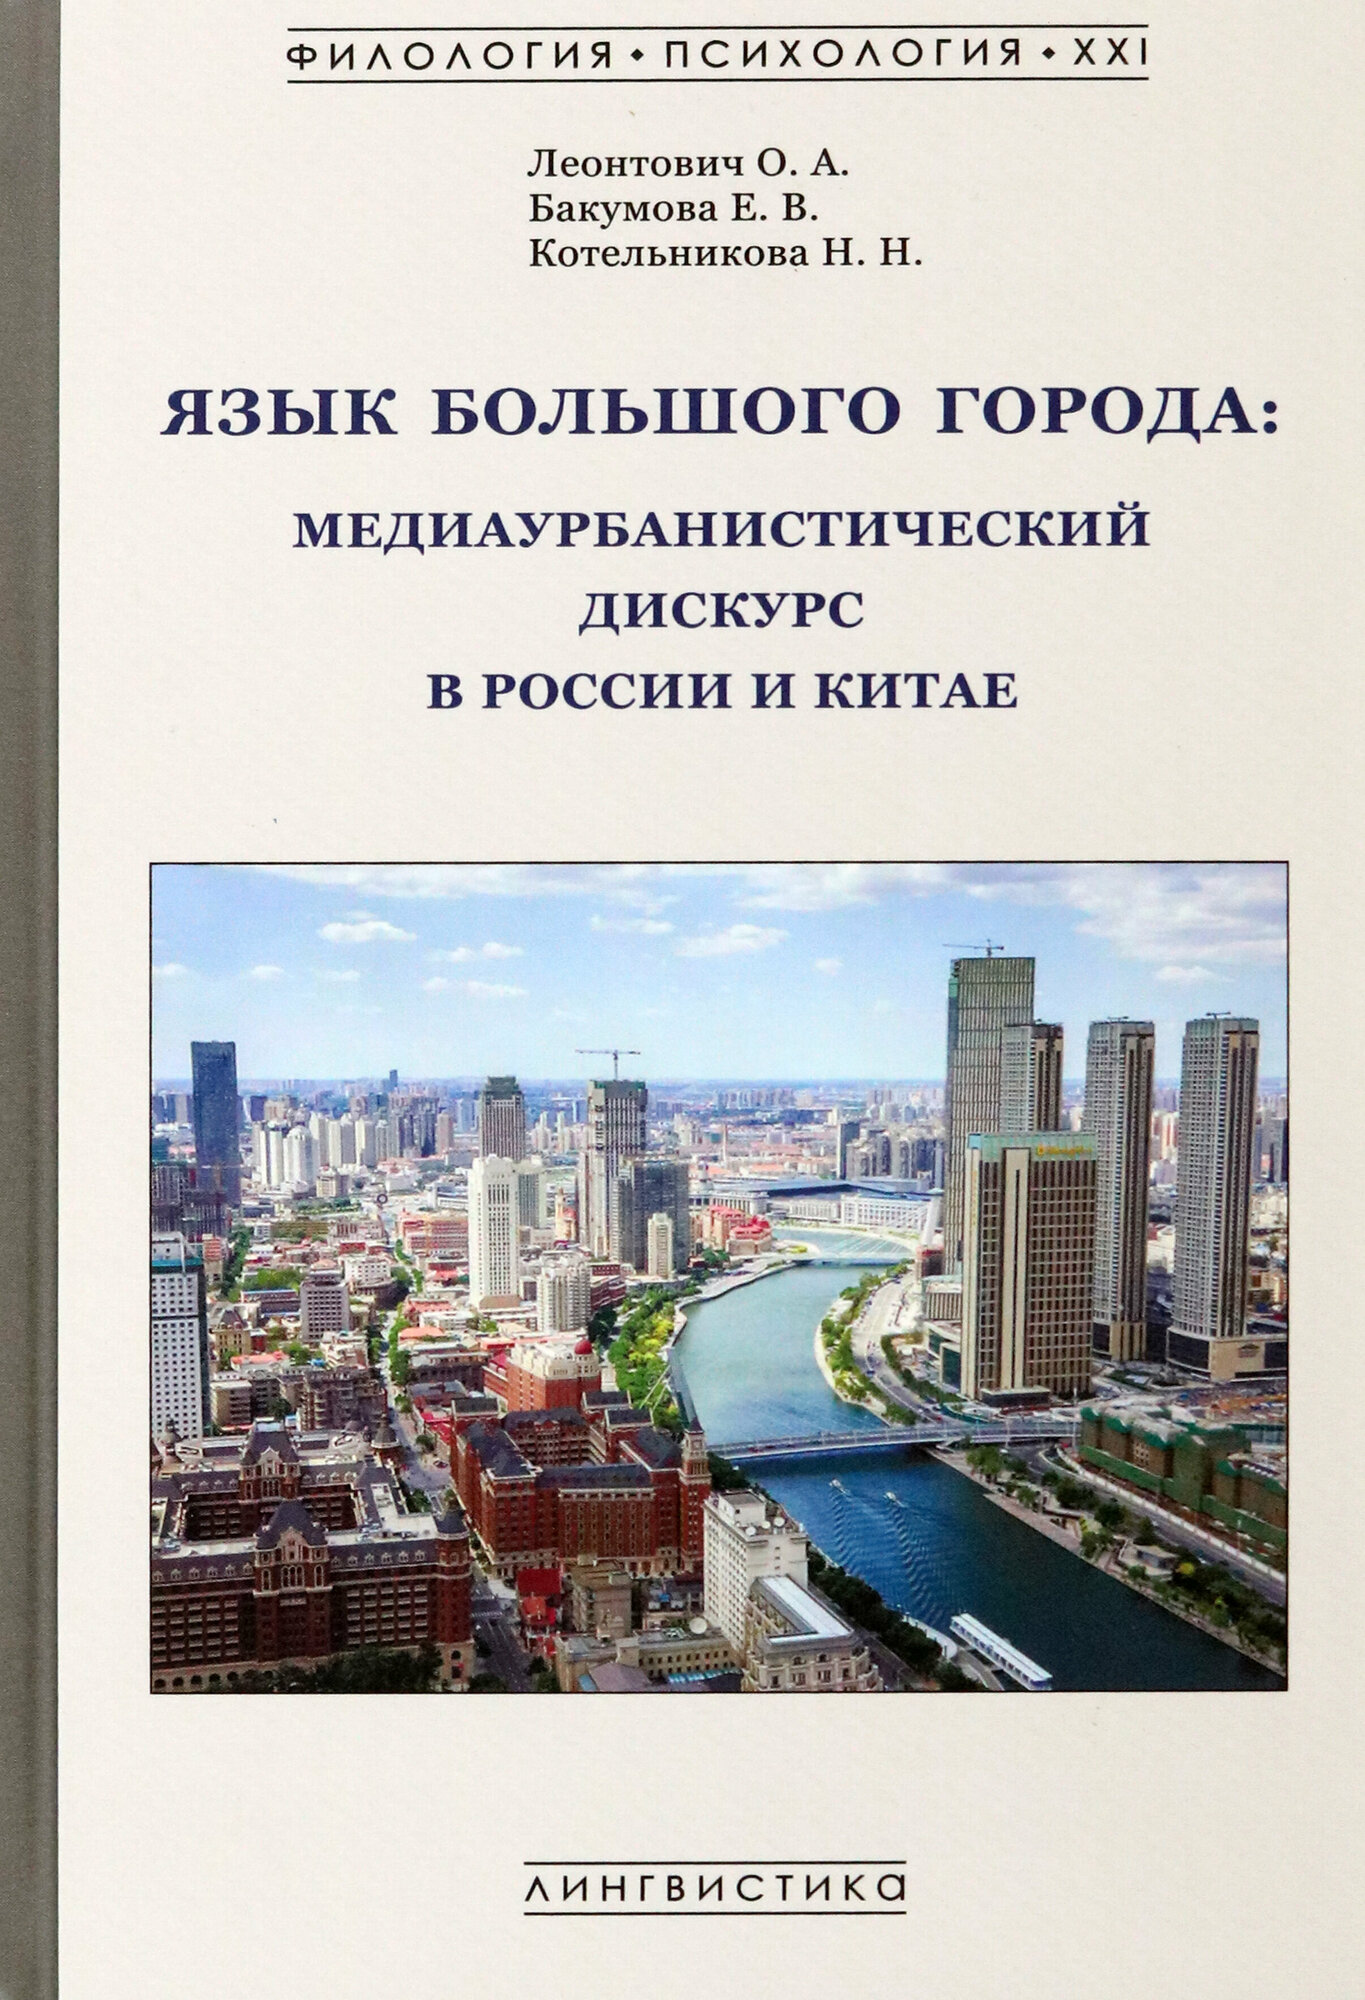 Язык большого города. Медиаурбанистический дискурс в России и Китае. Монография